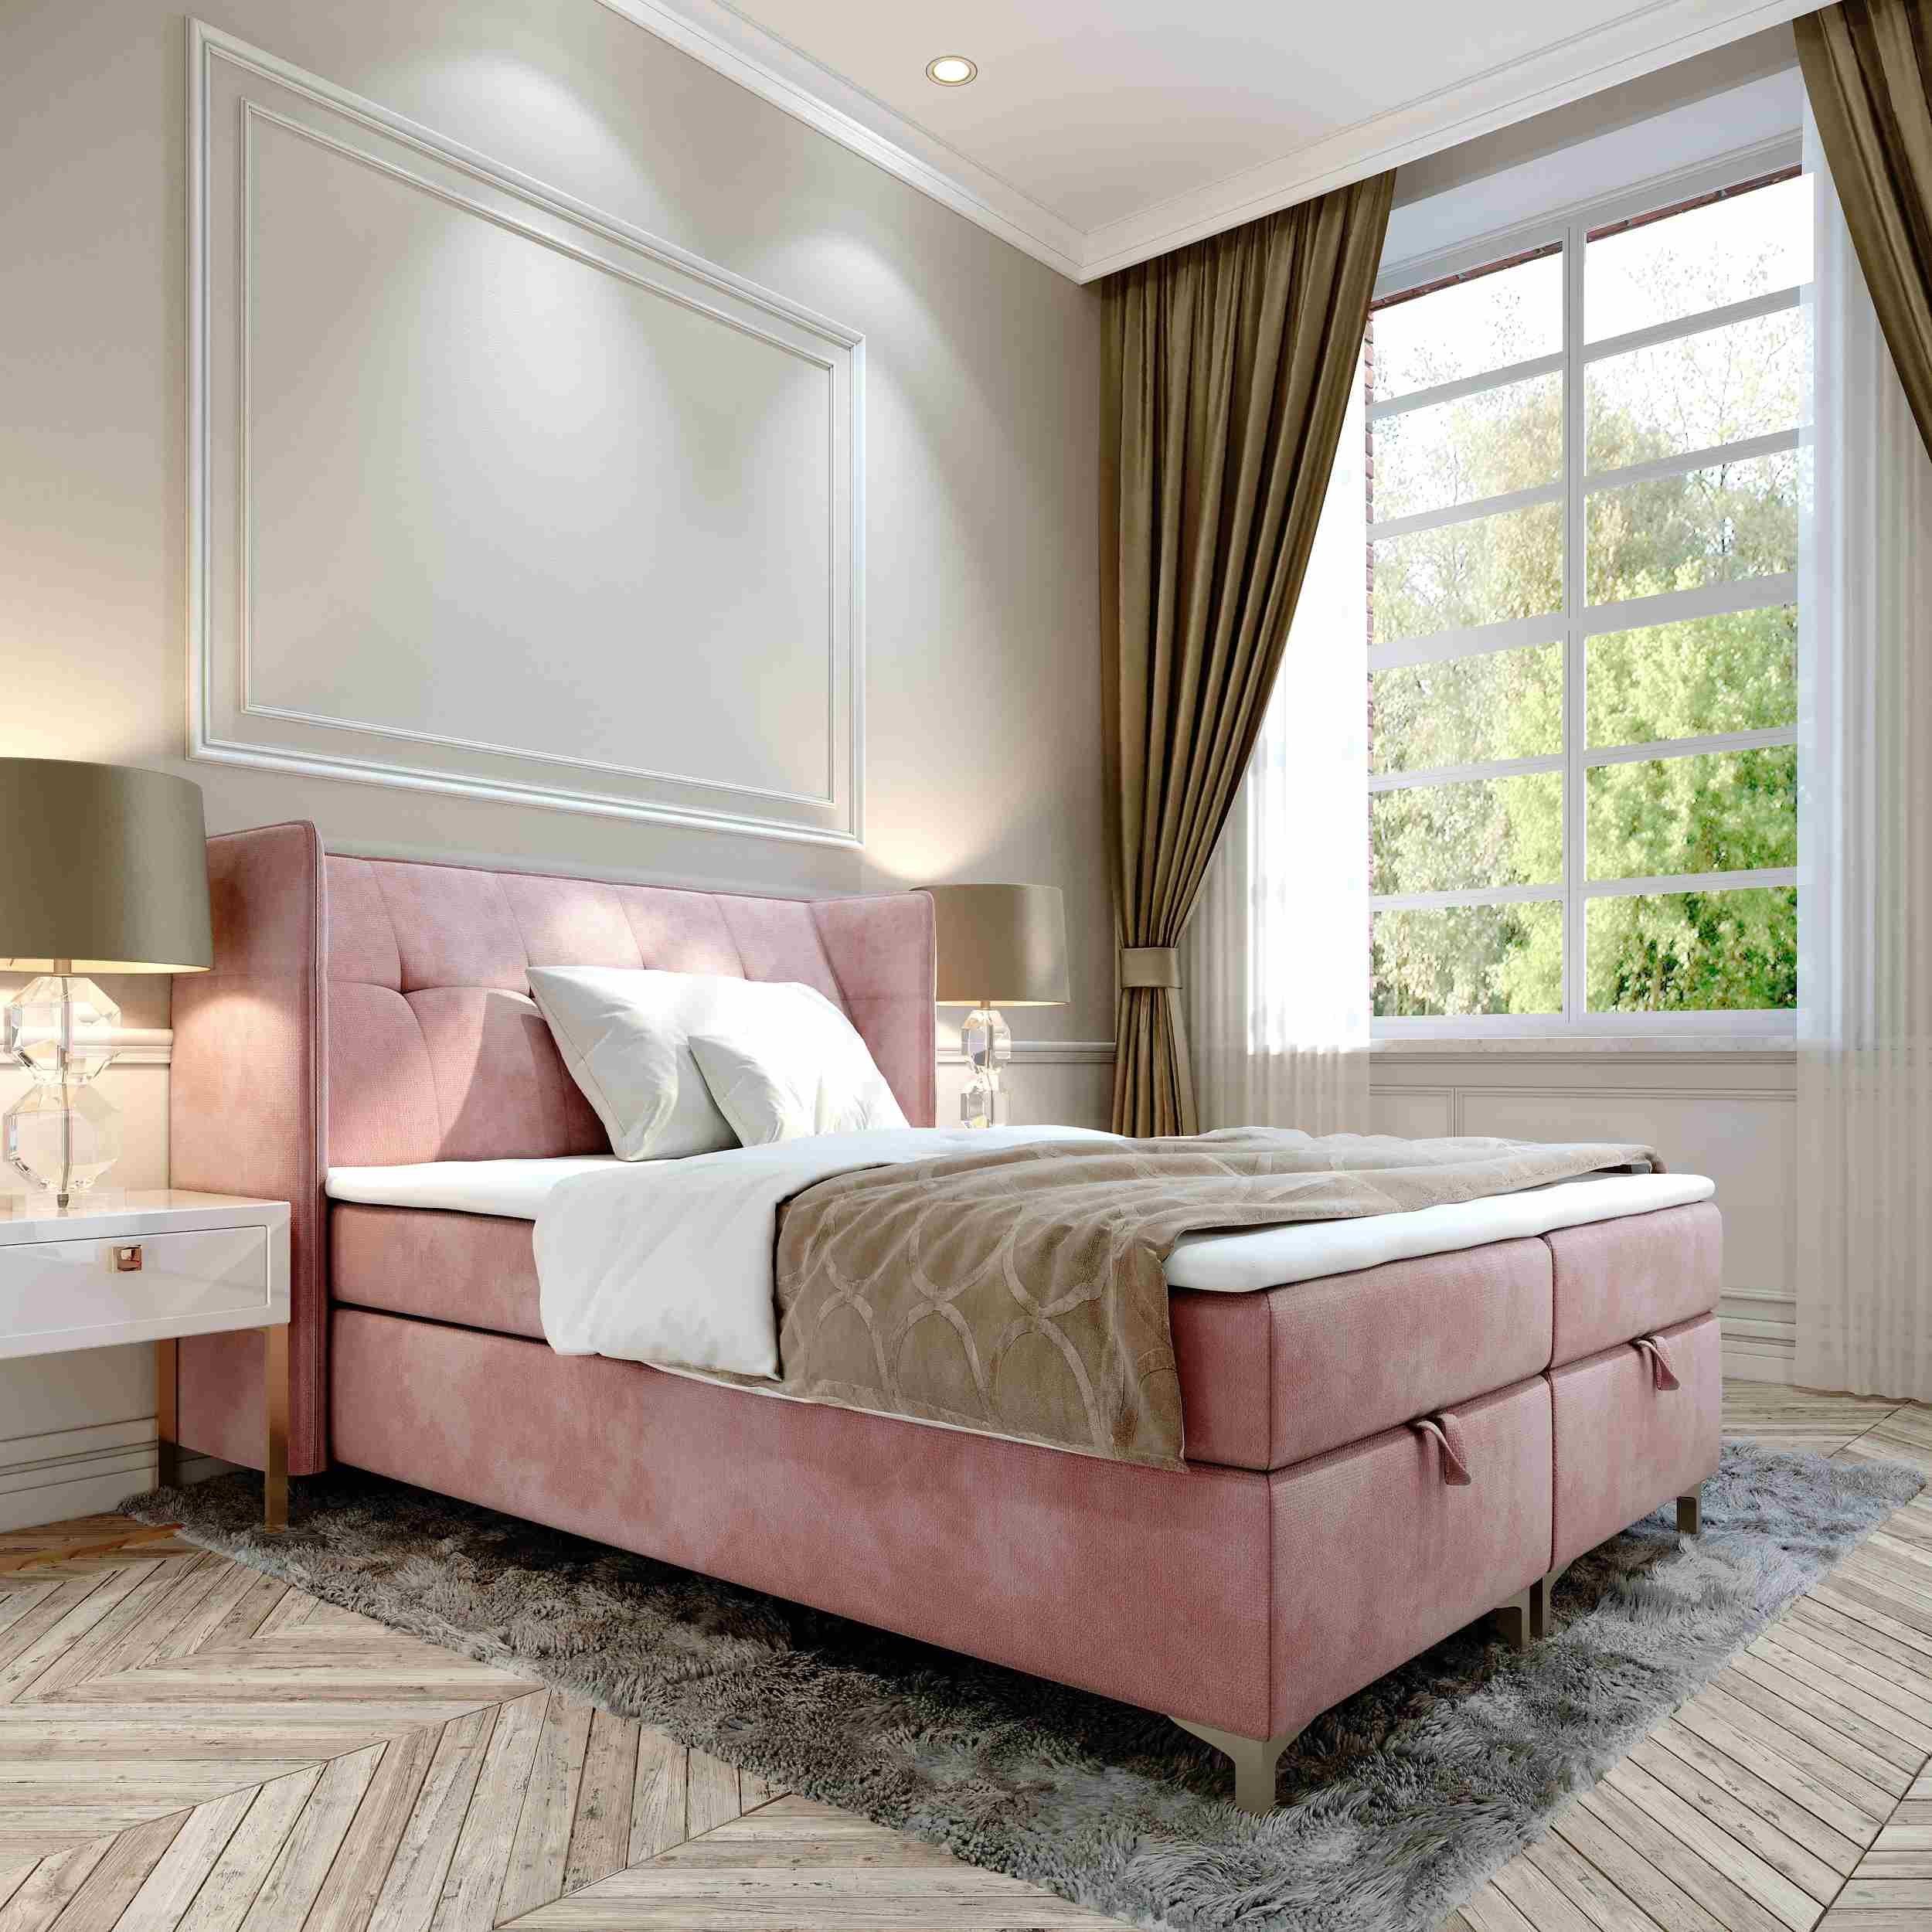 Furnix Polsterbett TOLIE 140,160, 180, 200x 200 cm Bett mit Bettkasten und Topper, wahlweise in 5 Größen und 7 Farben Rosa